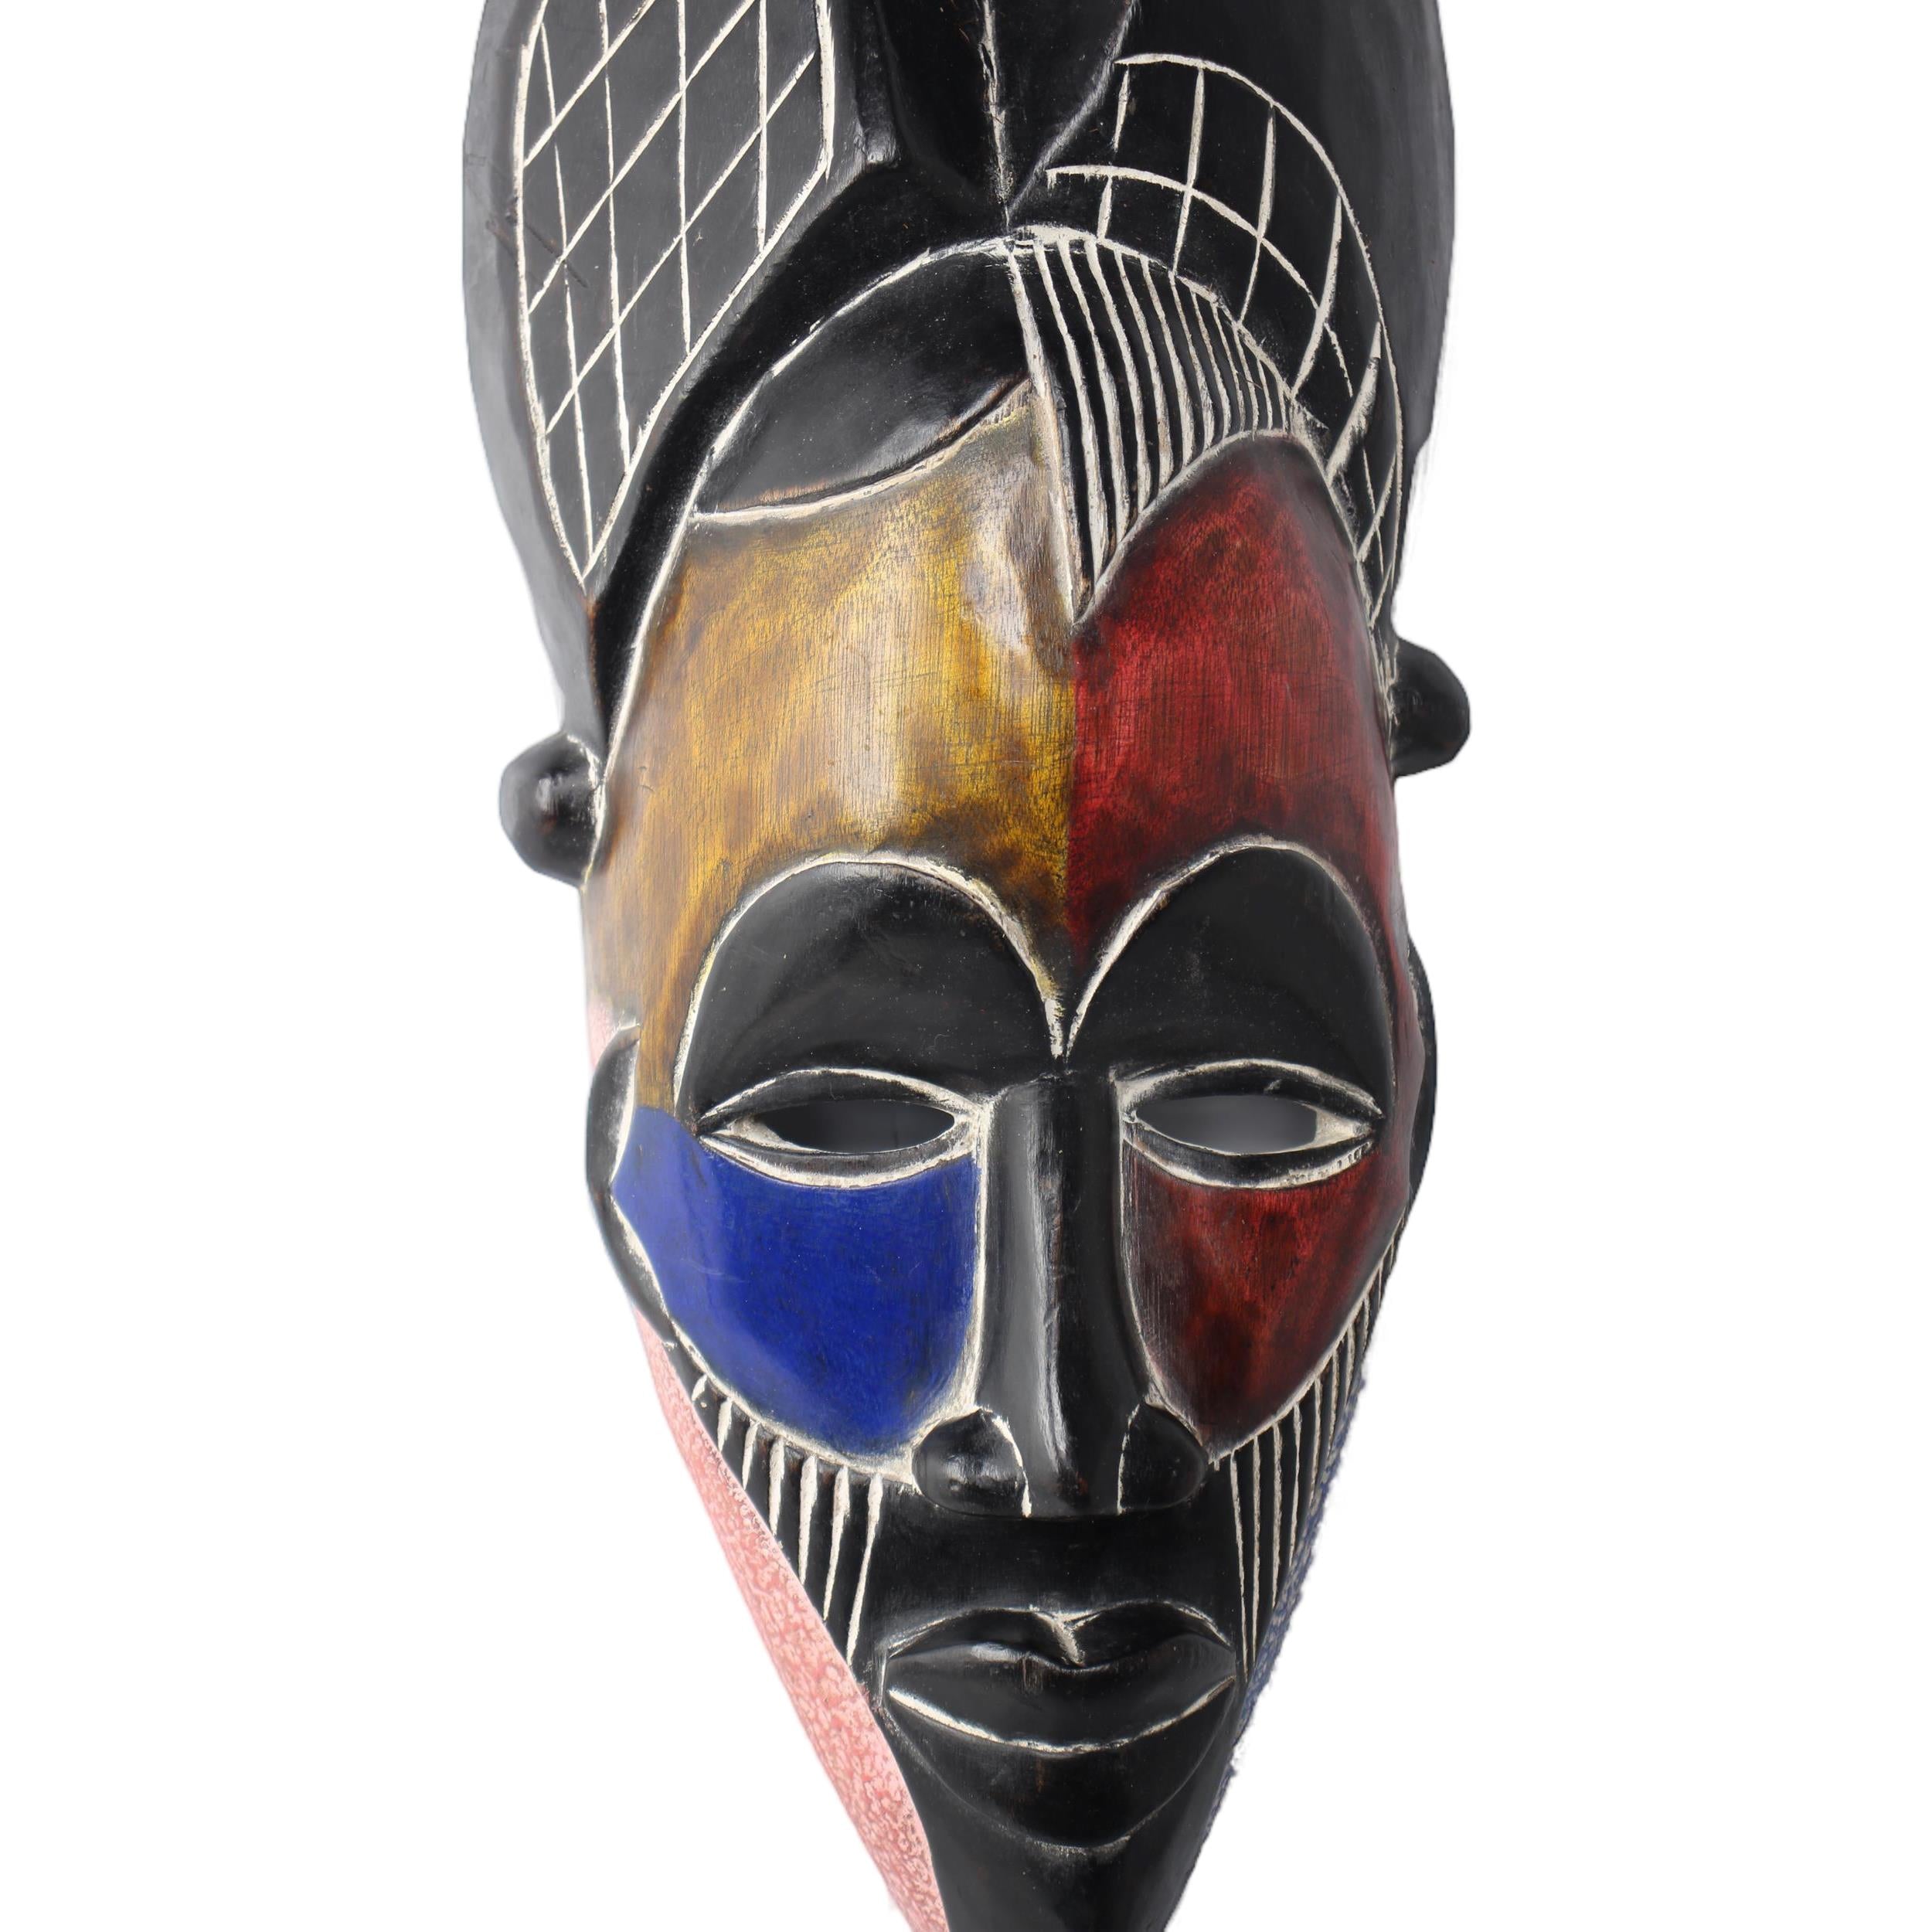 Tikar Tribe Mask ~18.9" Tall